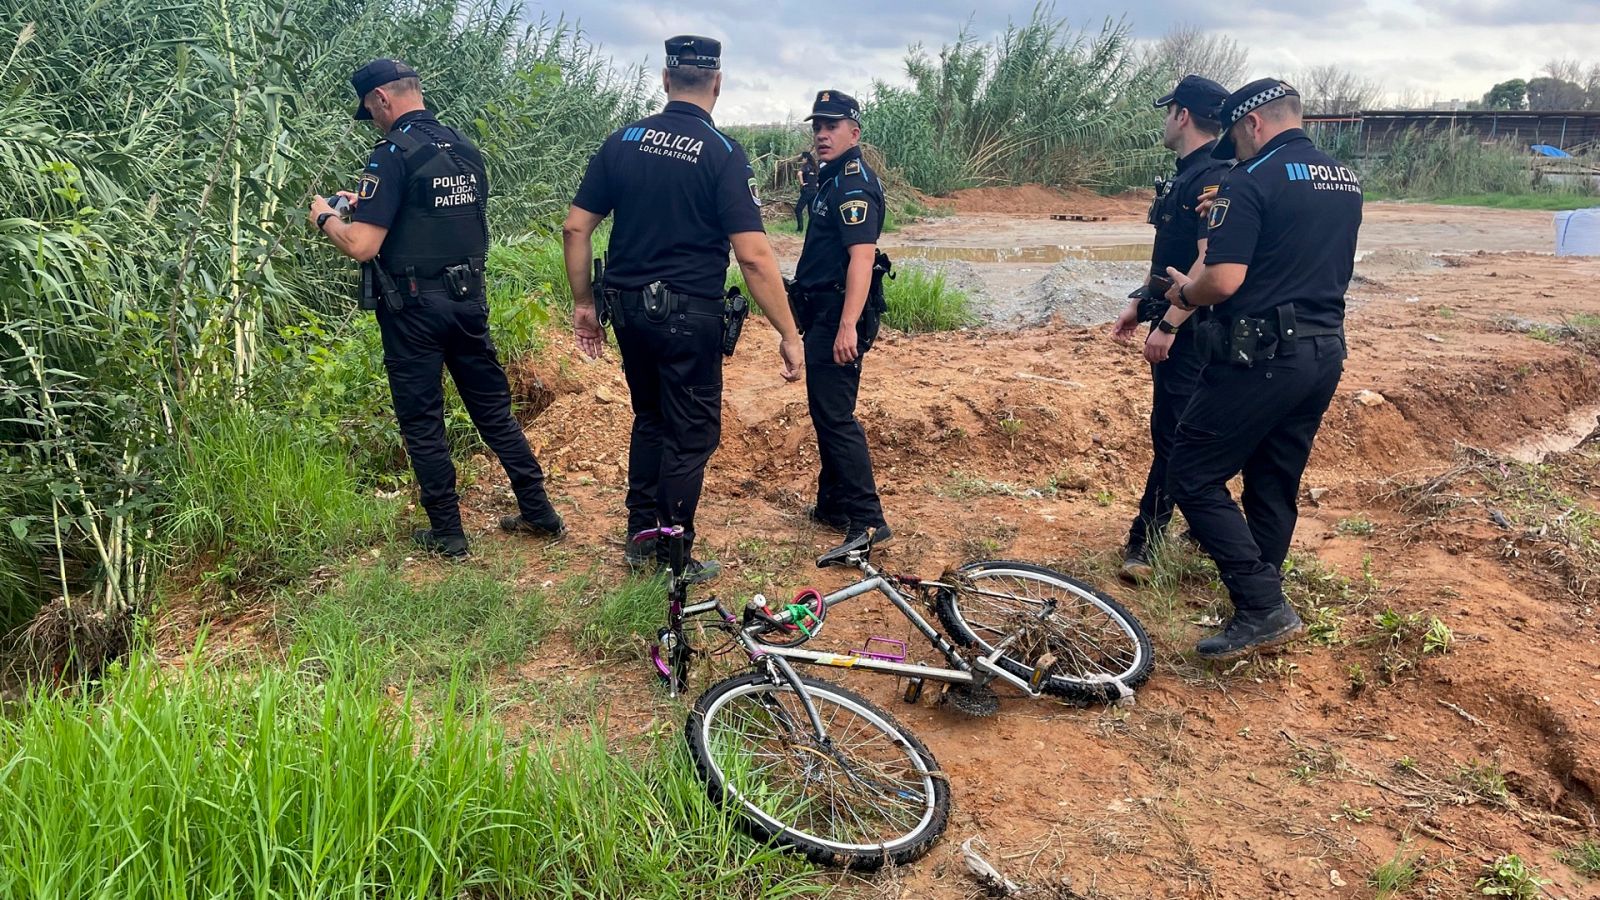 La Policía Local de paterna junto a la bicicleta del hombre arrastrado por el agua en Paterna, Valencia